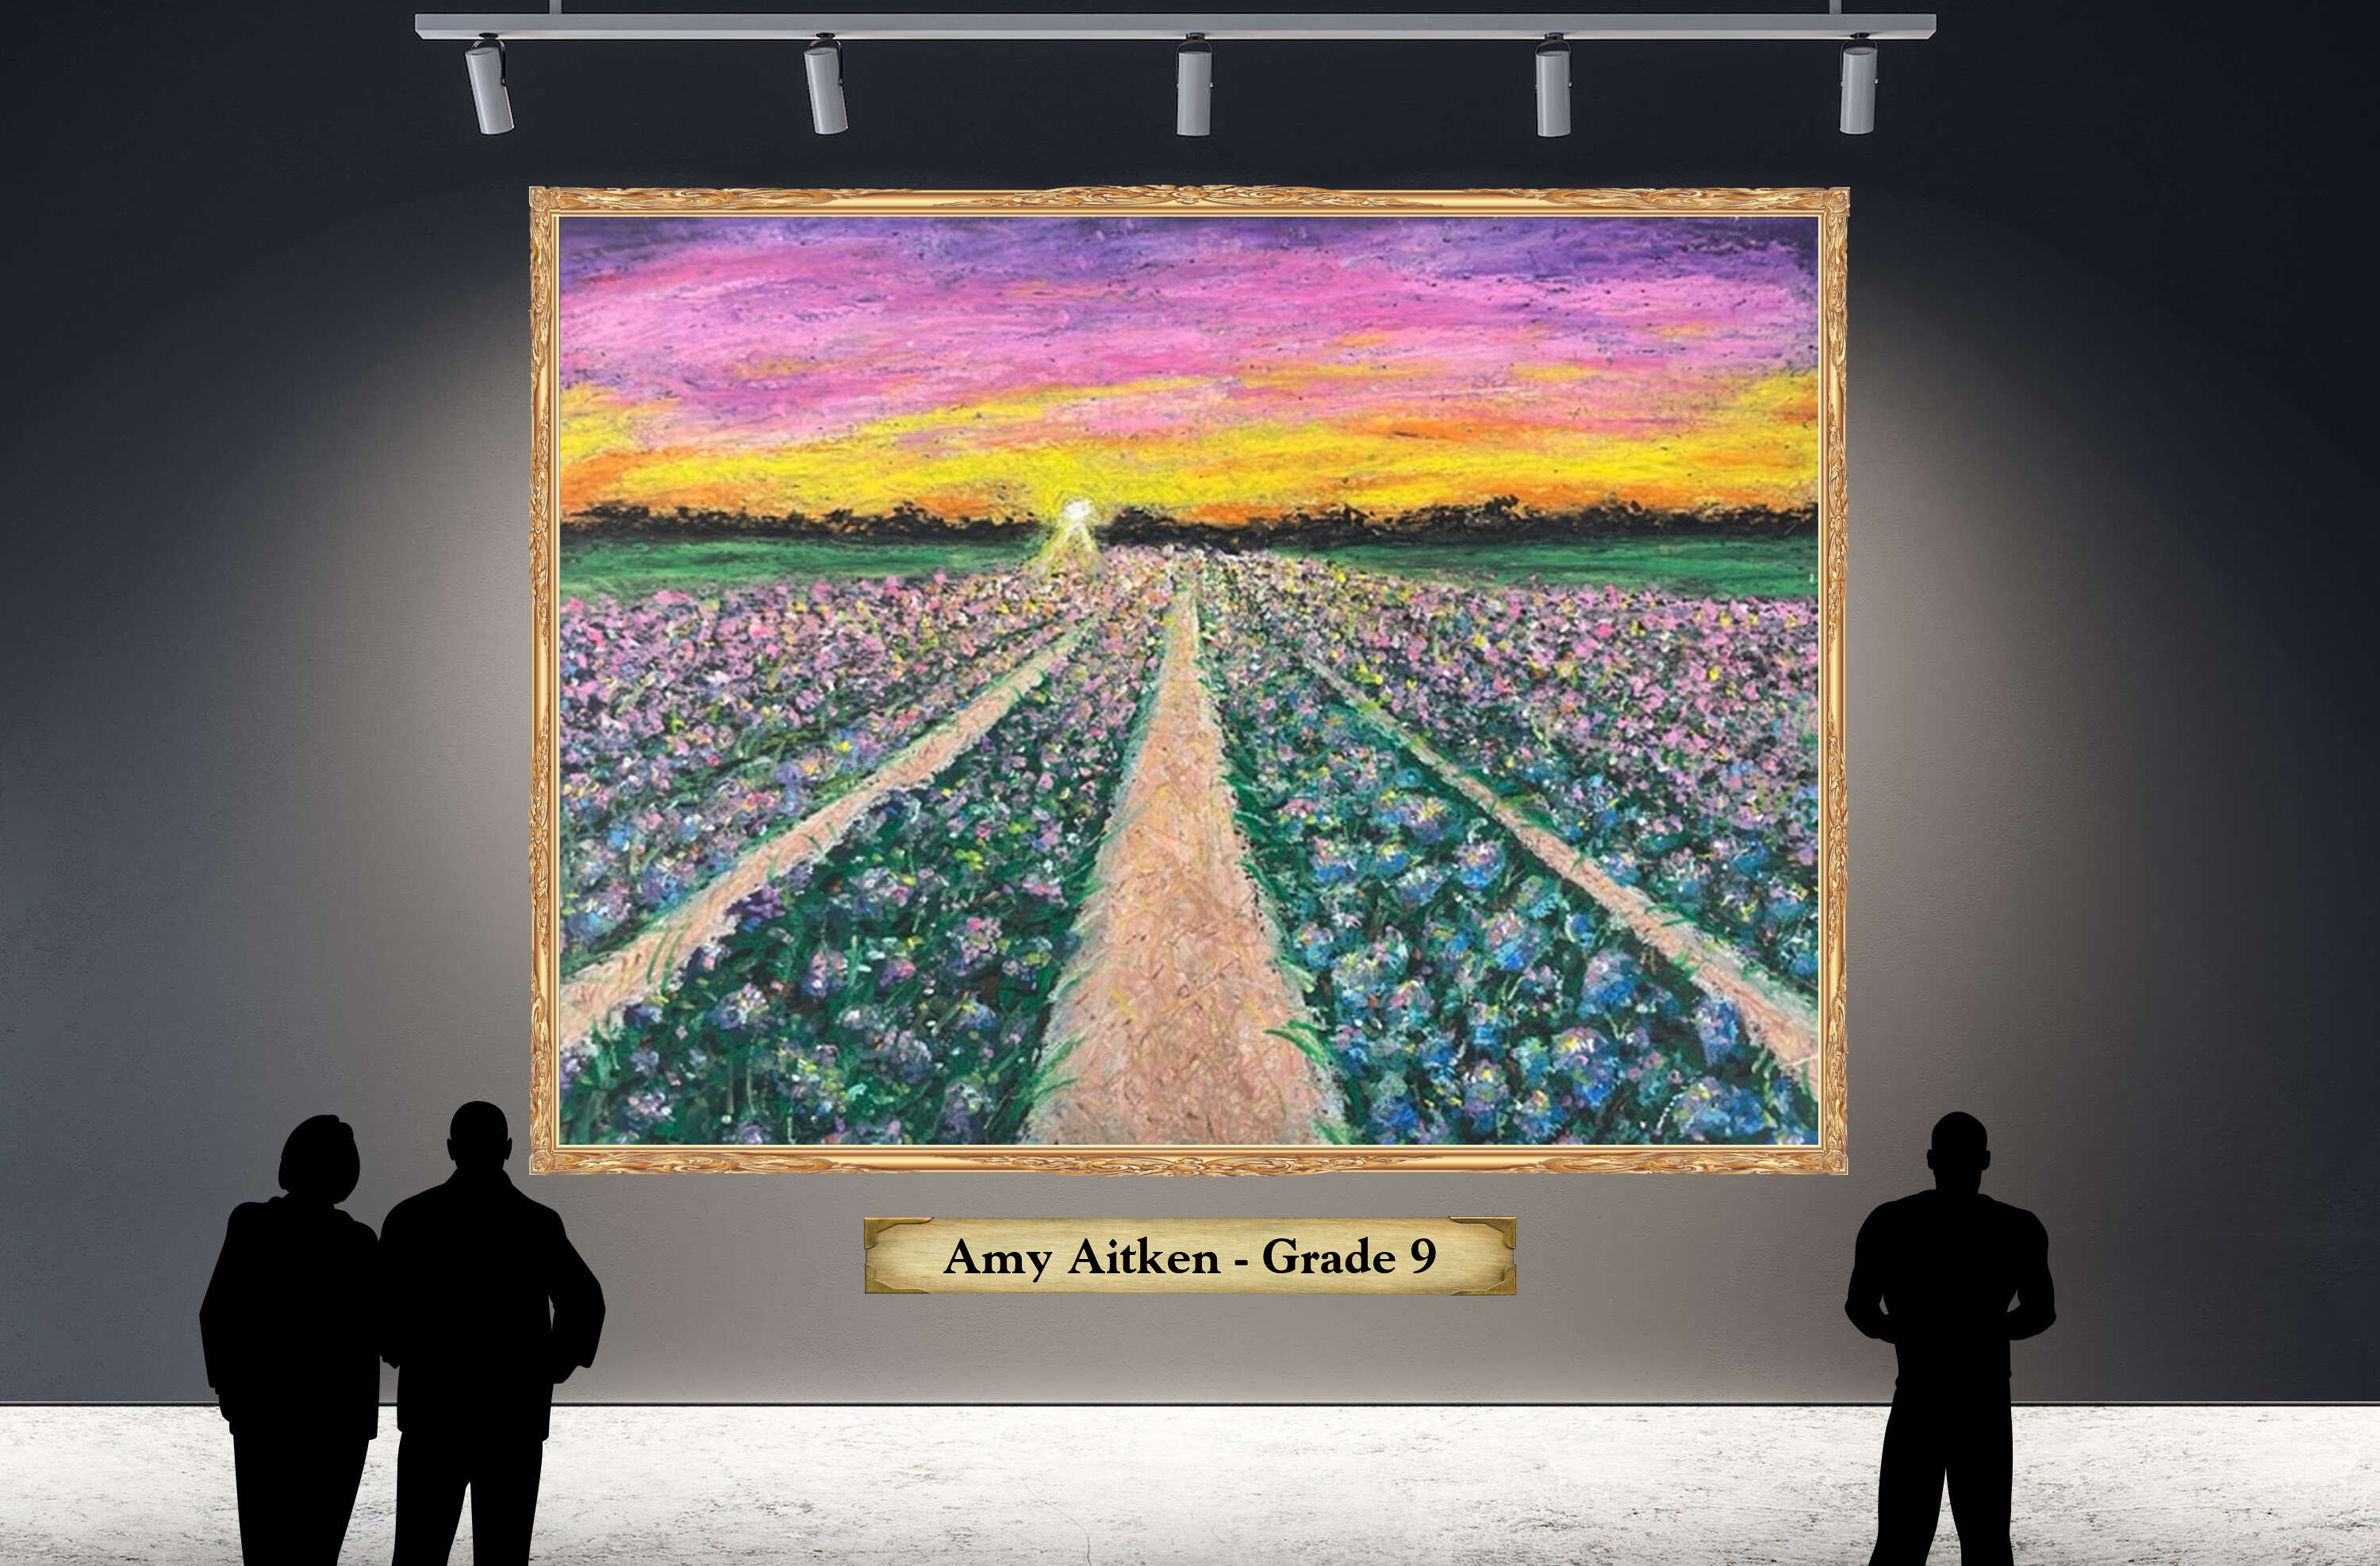 Amy Aitken - Grade 9